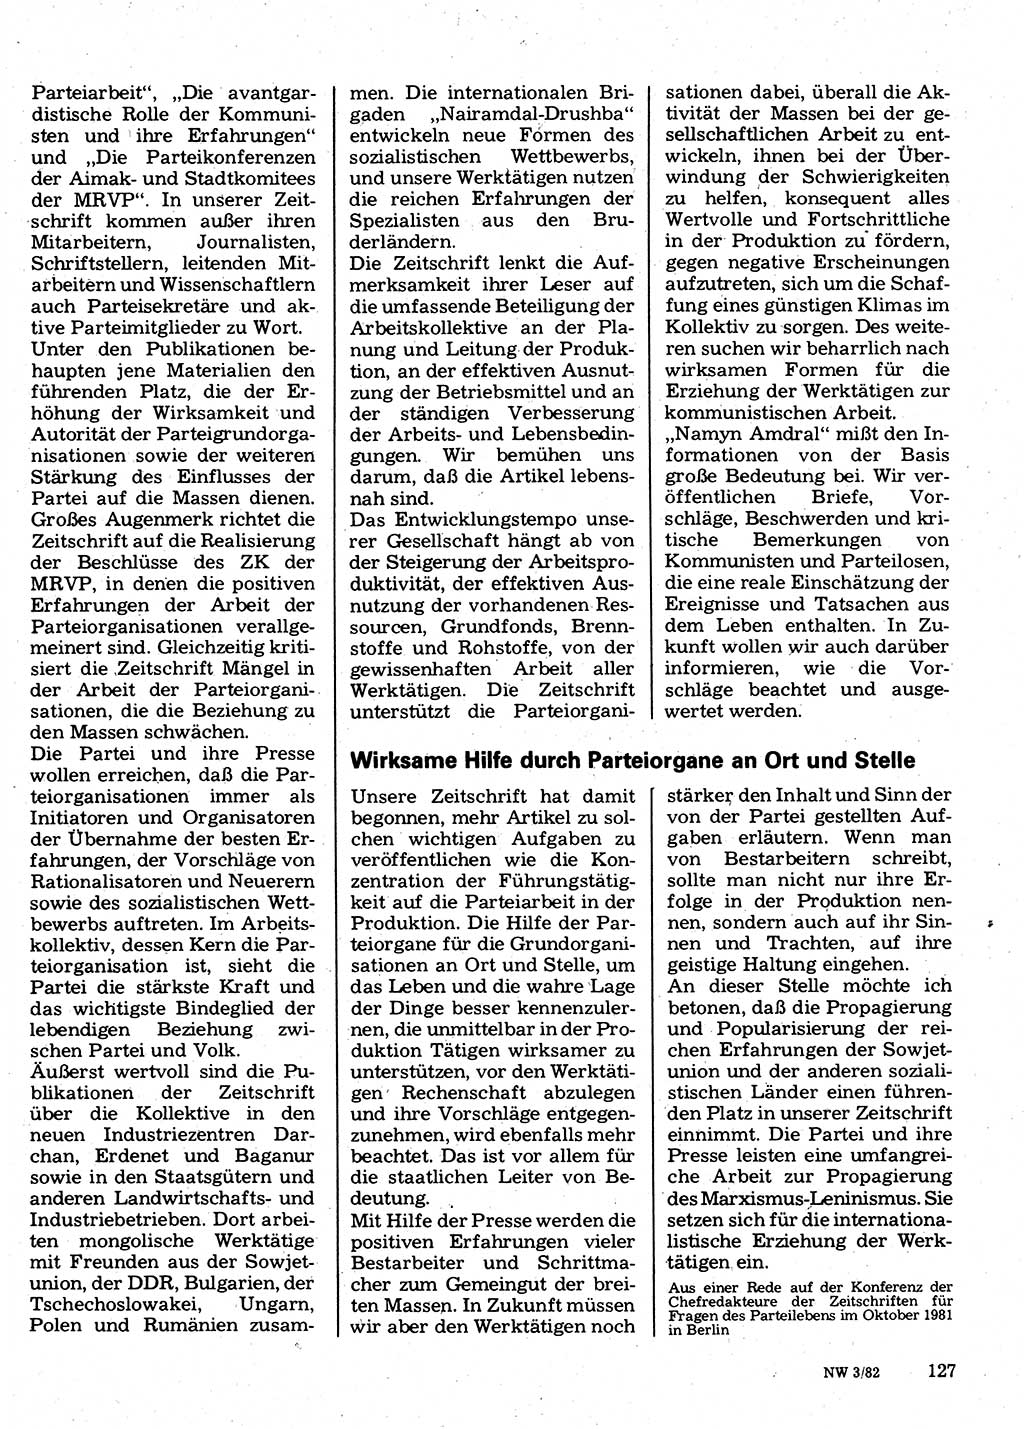 Neuer Weg (NW), Organ des Zentralkomitees (ZK) der SED (Sozialistische Einheitspartei Deutschlands) für Fragen des Parteilebens, 37. Jahrgang [Deutsche Demokratische Republik (DDR)] 1982, Seite 127 (NW ZK SED DDR 1982, S. 127)